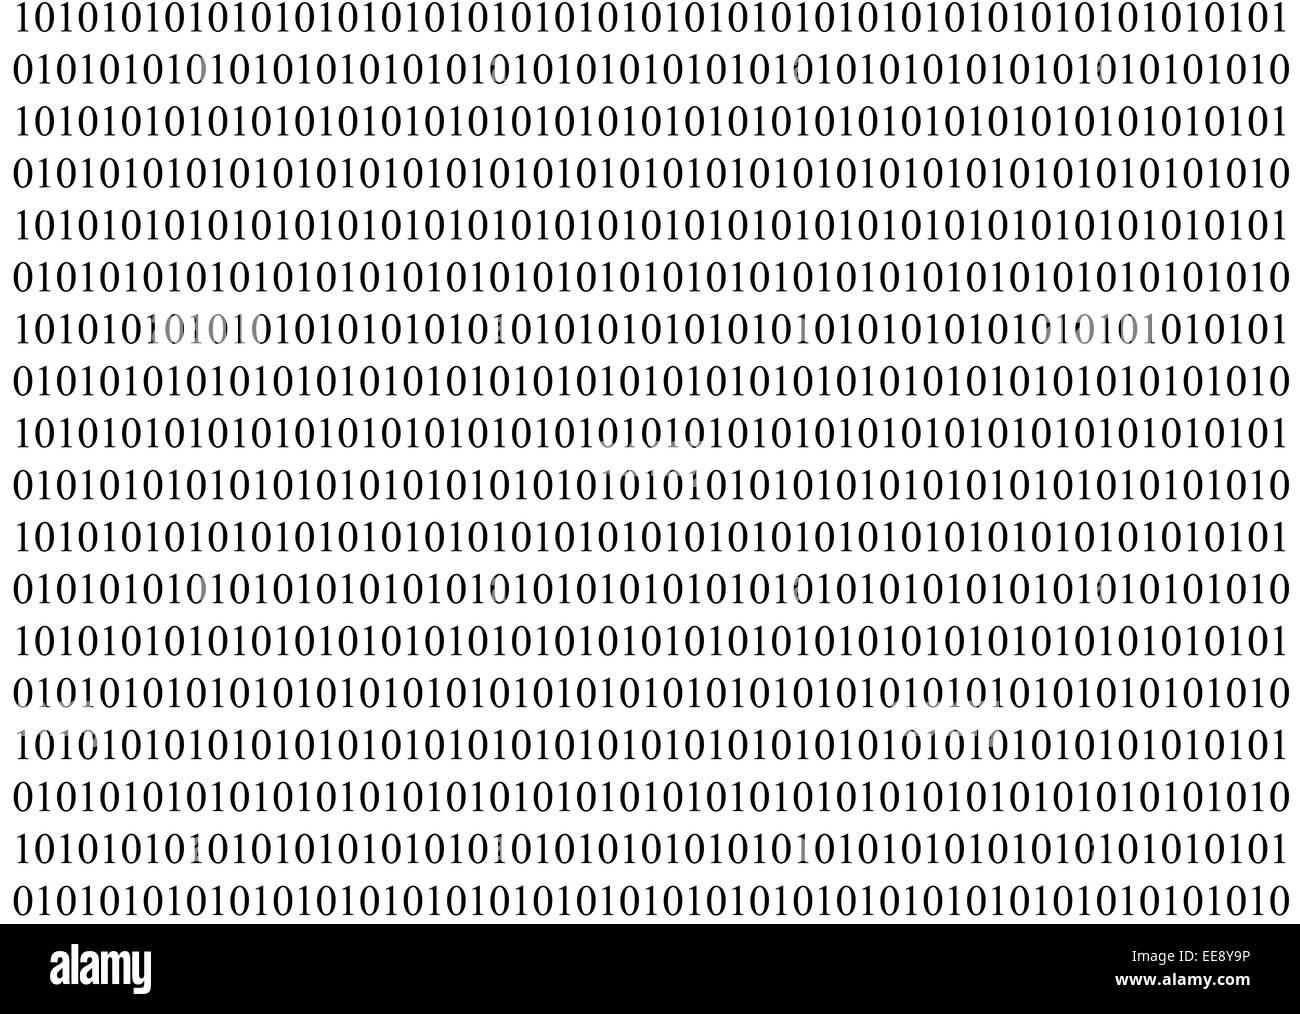 Codice binario sequenza numerica di dati digitali Foto Stock